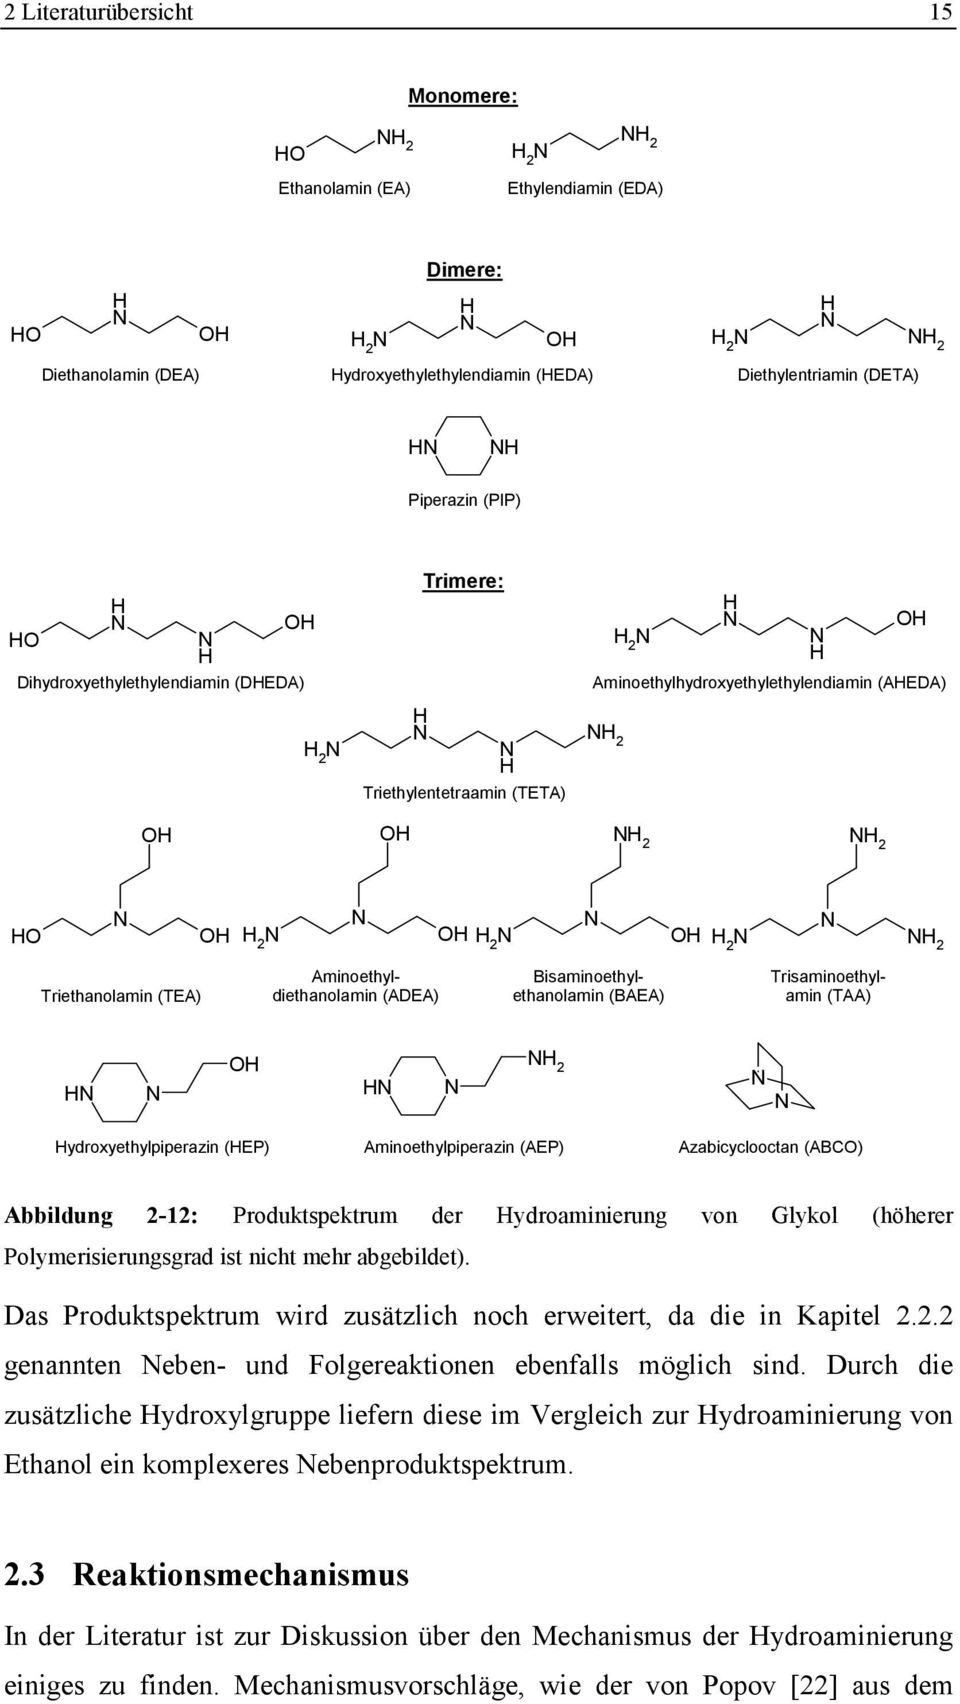 N 2 Triethanolamin (TEA) Aminoethyldiethanolamin (ADEA) Bisaminoethylethanolamin (BAEA) Trisaminoethylamin (TAA) N N O N N N 2 N N ydroxyethylpiperazin (EP) Aminoethylpiperazin (AEP) Azabicyclooctan